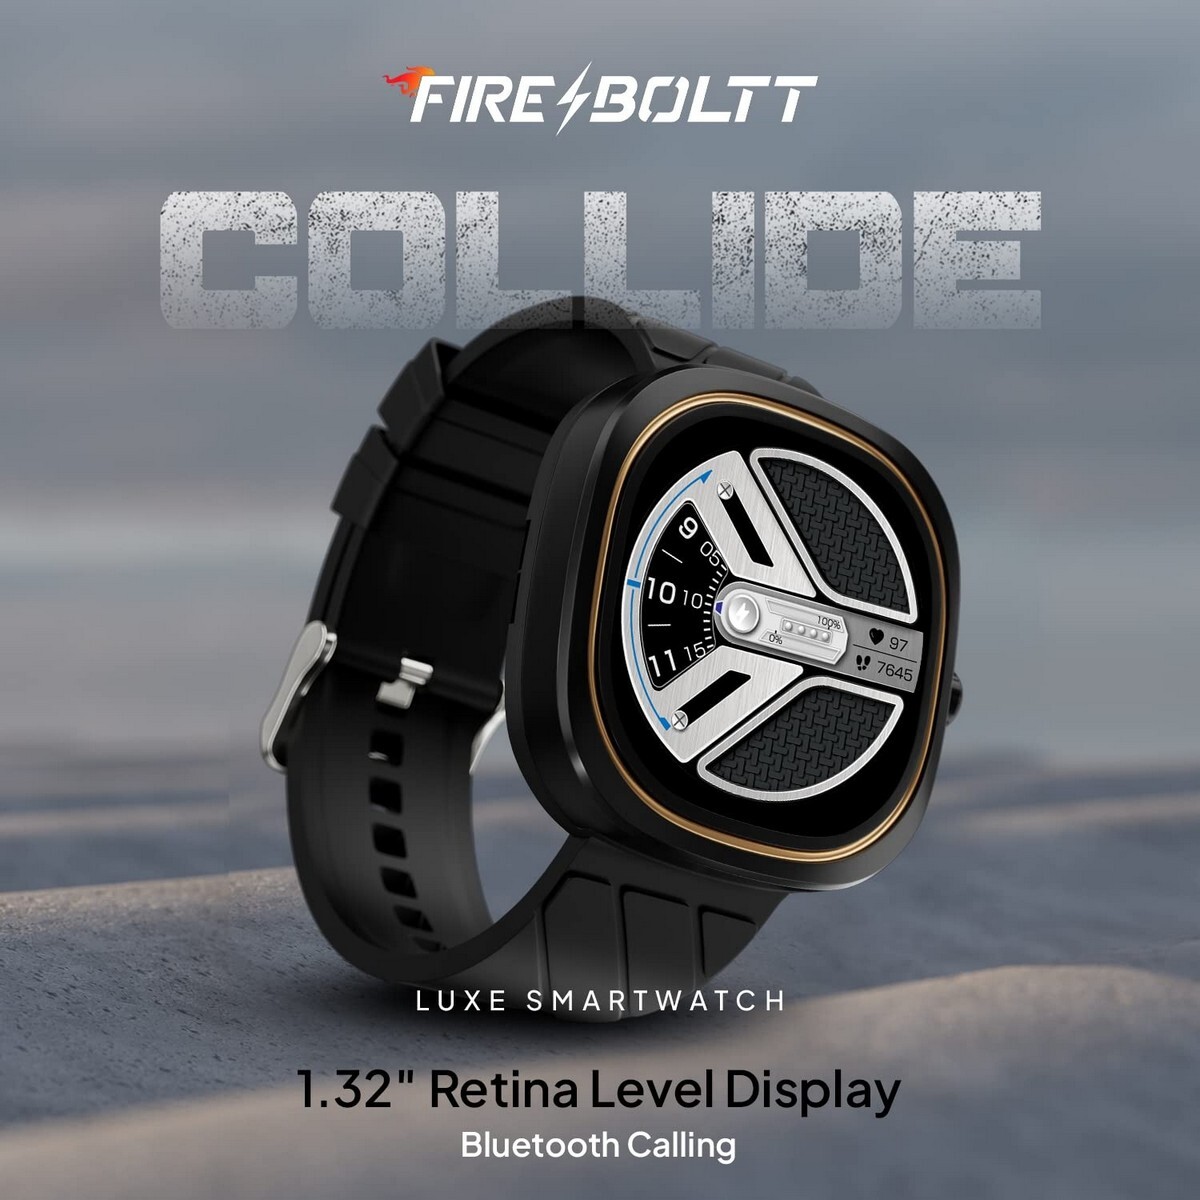 FireBoltt Smart Watch Collide Matte Black S